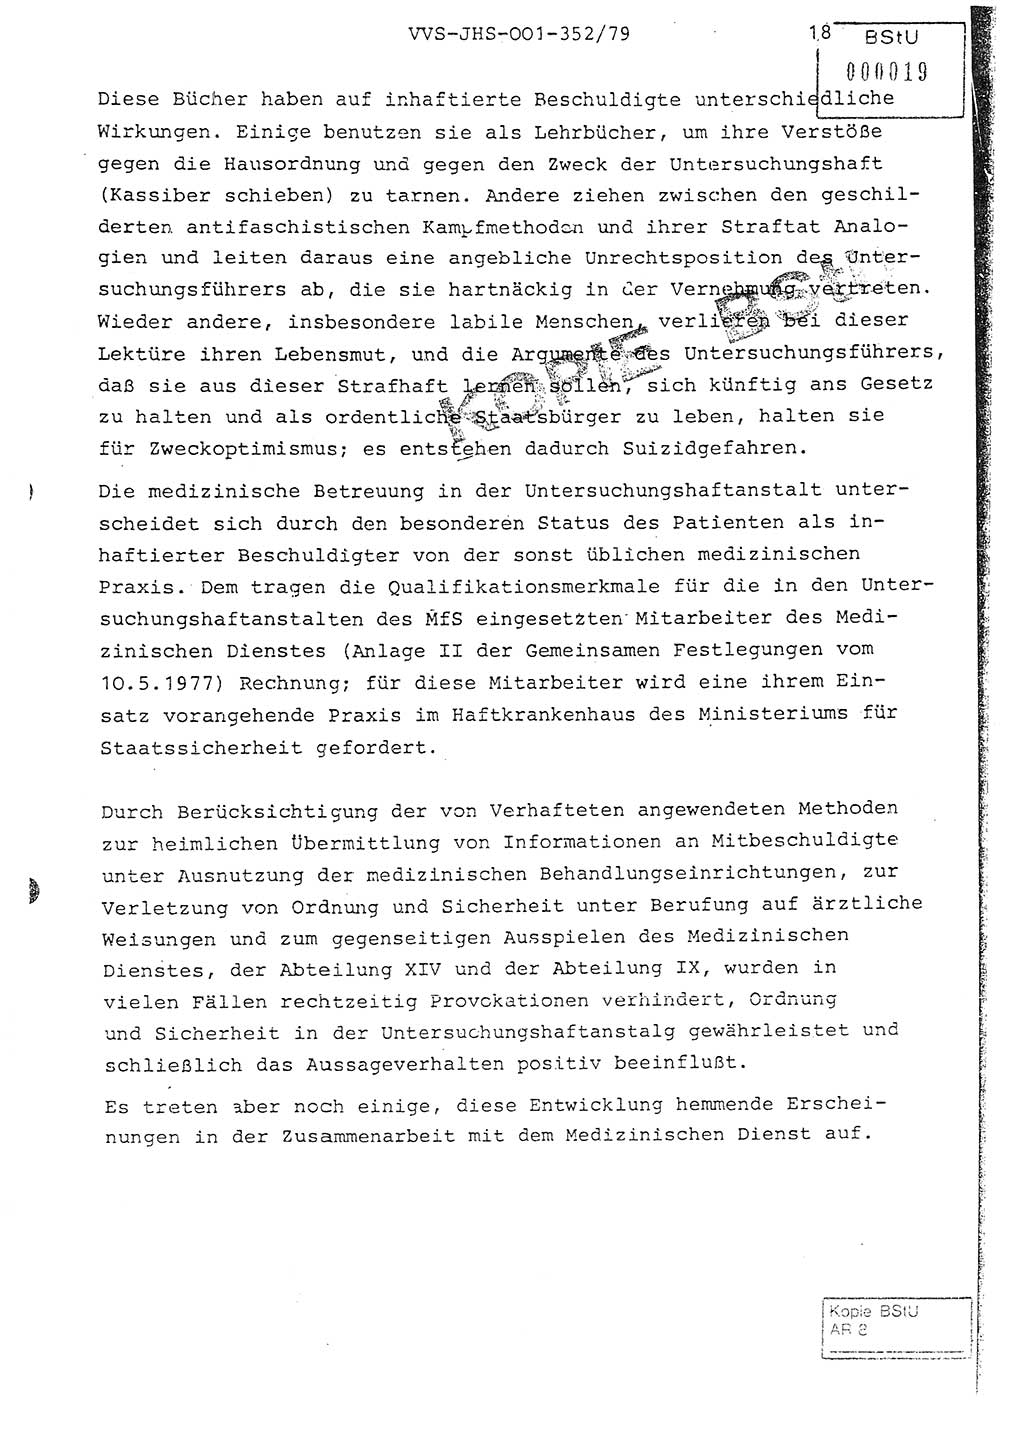 Diplomarbeit Hauptmann Peter Wittum (BV Bln. Abt. HA Ⅸ), Ministerium für Staatssicherheit (MfS) [Deutsche Demokratische Republik (DDR)], Juristische Hochschule (JHS), Vertrauliche Verschlußsache (VVS) o001-352/79, Potsdam 1979, Seite 18 (Dipl.-Arb. MfS DDR JHS VVS o001-352/79 1979, S. 18)